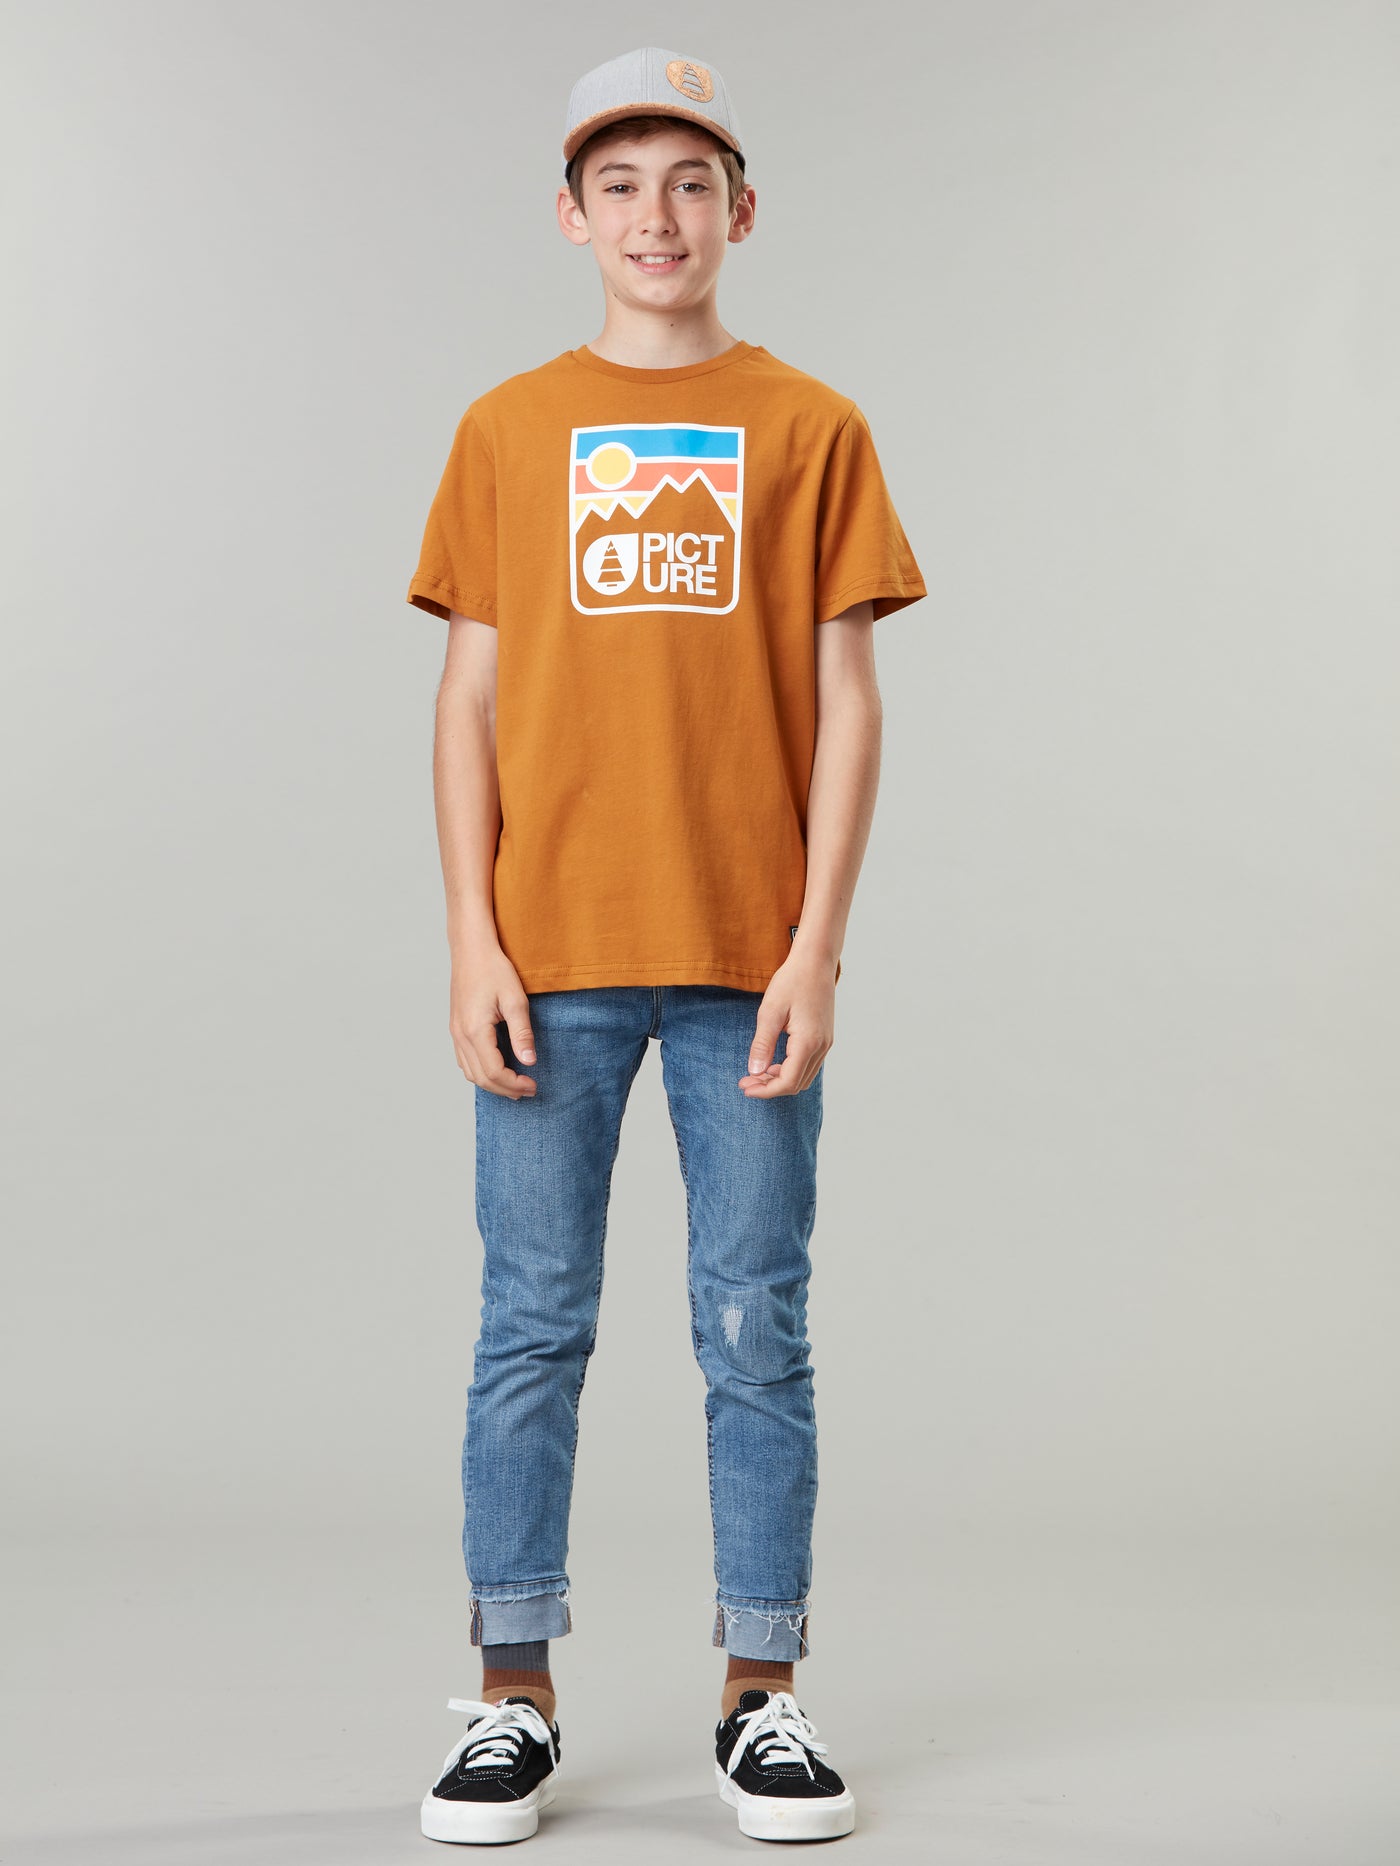 Picture Organicin Nausta lasten ja nuorten t-paita pumpkin sky värissä pojan päällä edestä kuvattuna